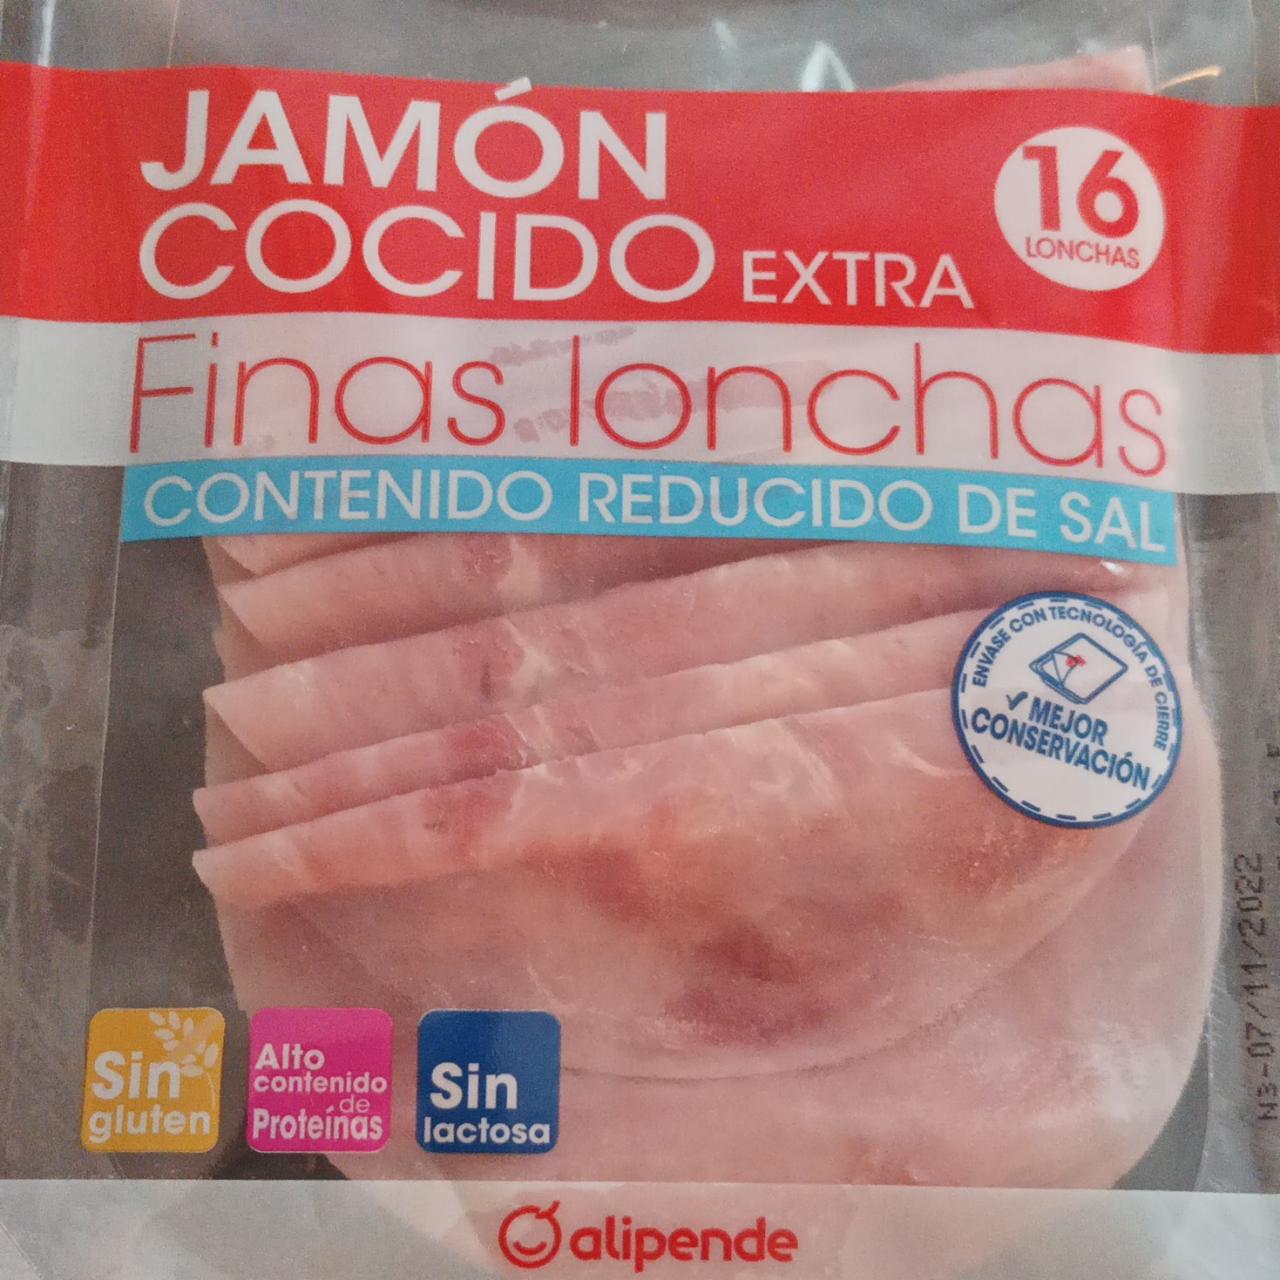 Fotografie - Jamón cocido extra FInas lonchas Alipende